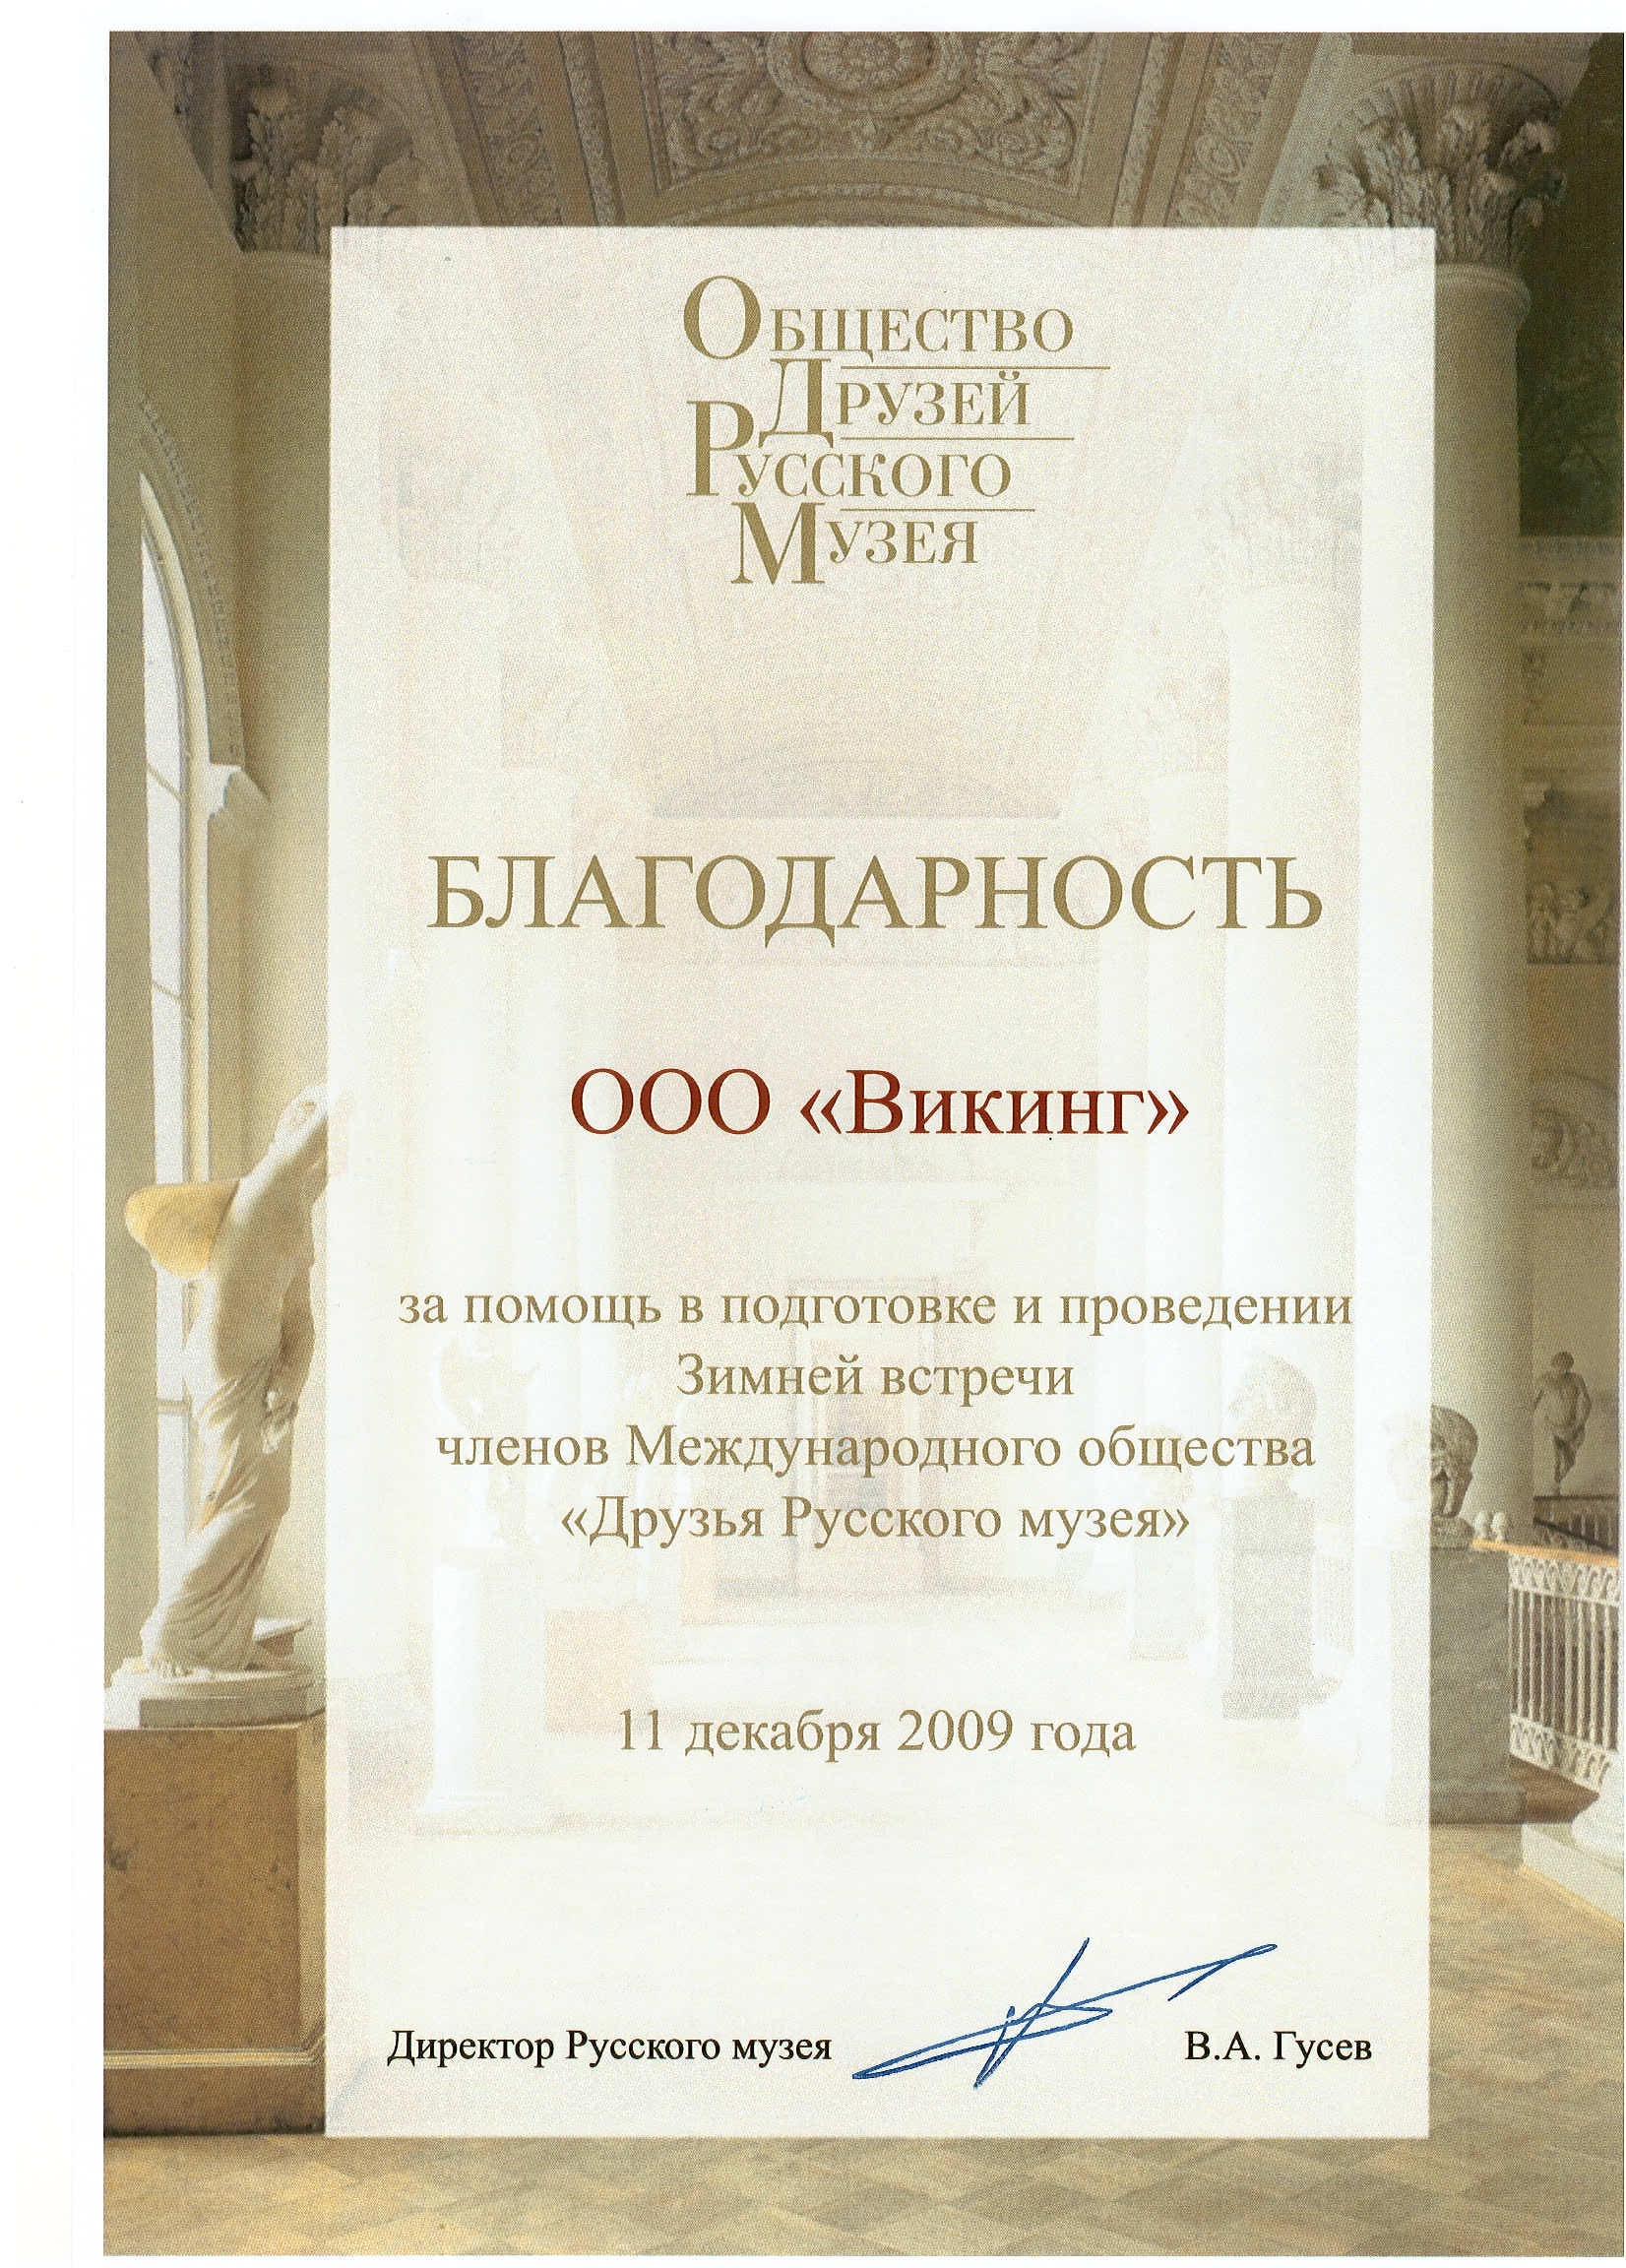 Благодарность от директора Русского музея. 2009 год